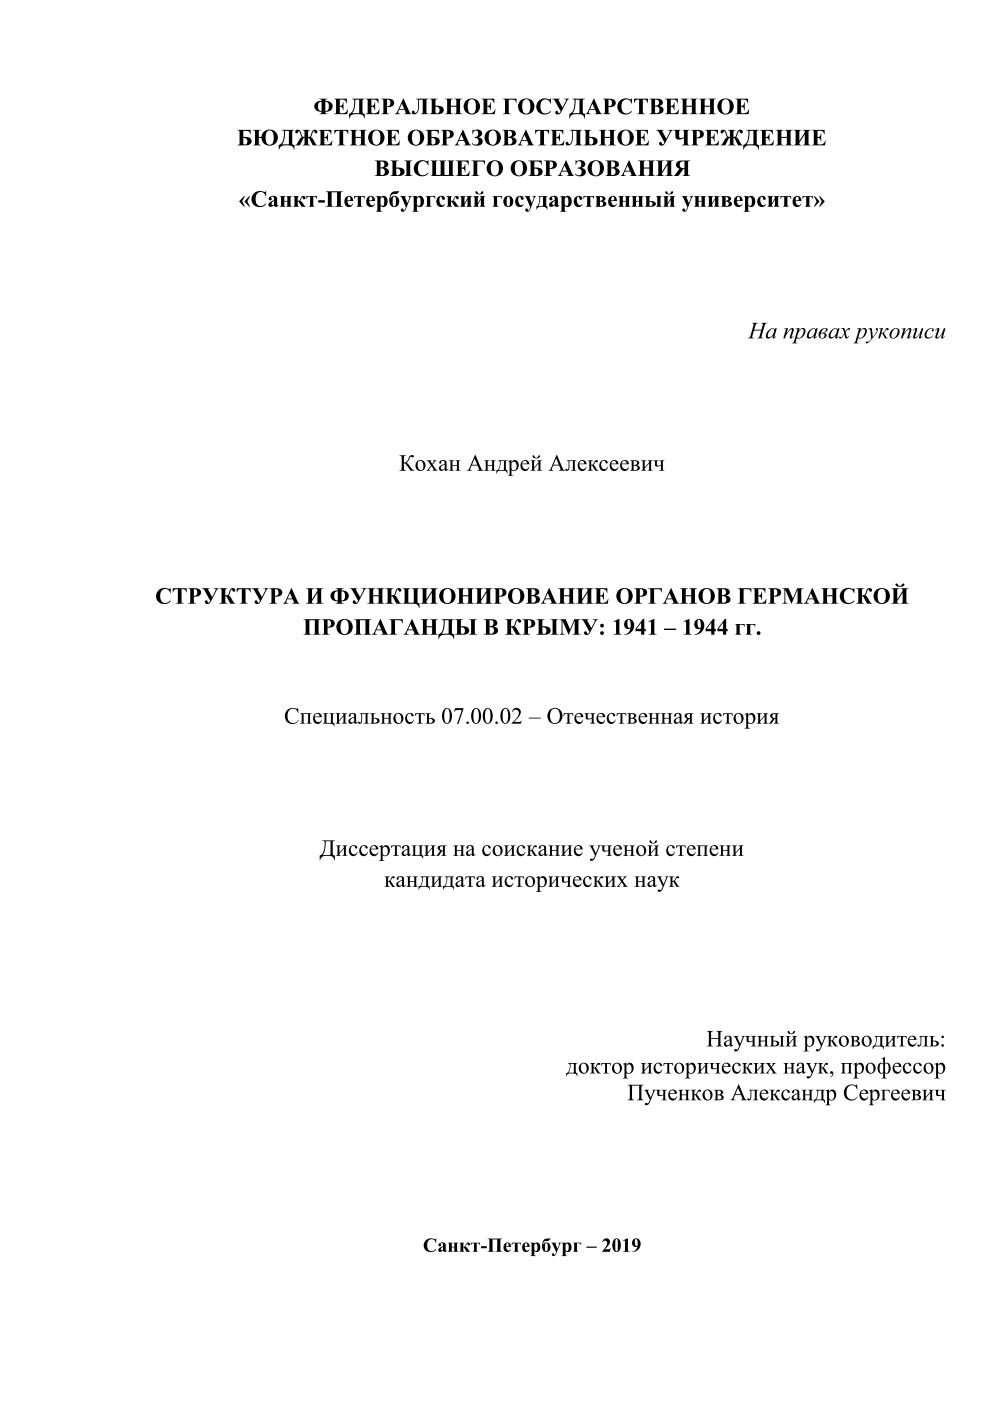 Структура и функционирование органов германской пропаганды в Крыму: 1941-1944